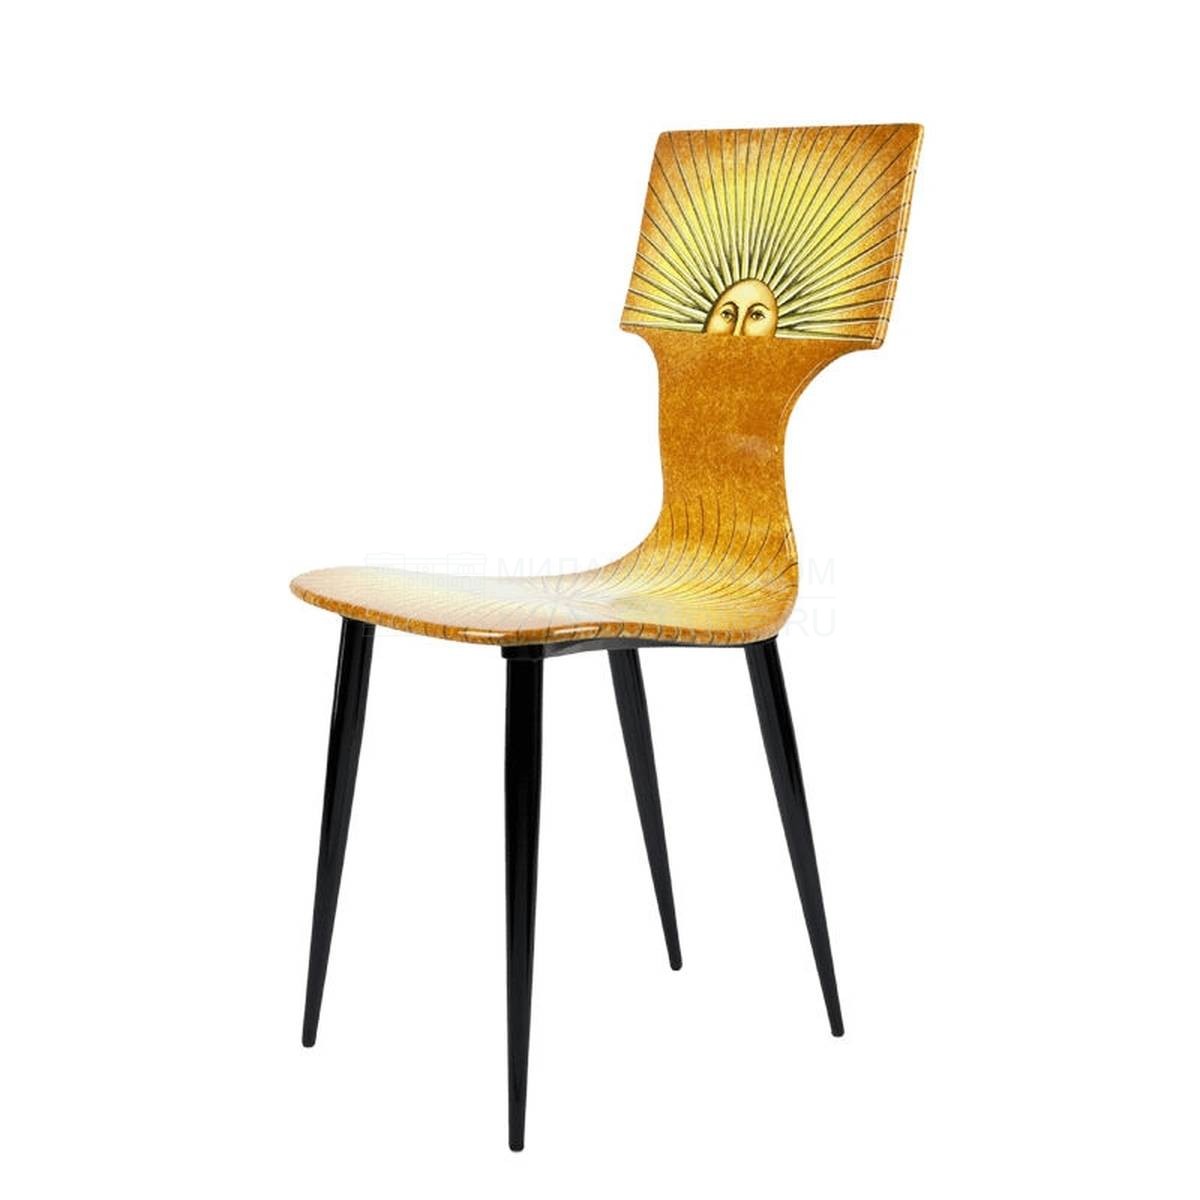 Металлический / Пластиковый стул Sole из Италии фабрики FORNASETTI